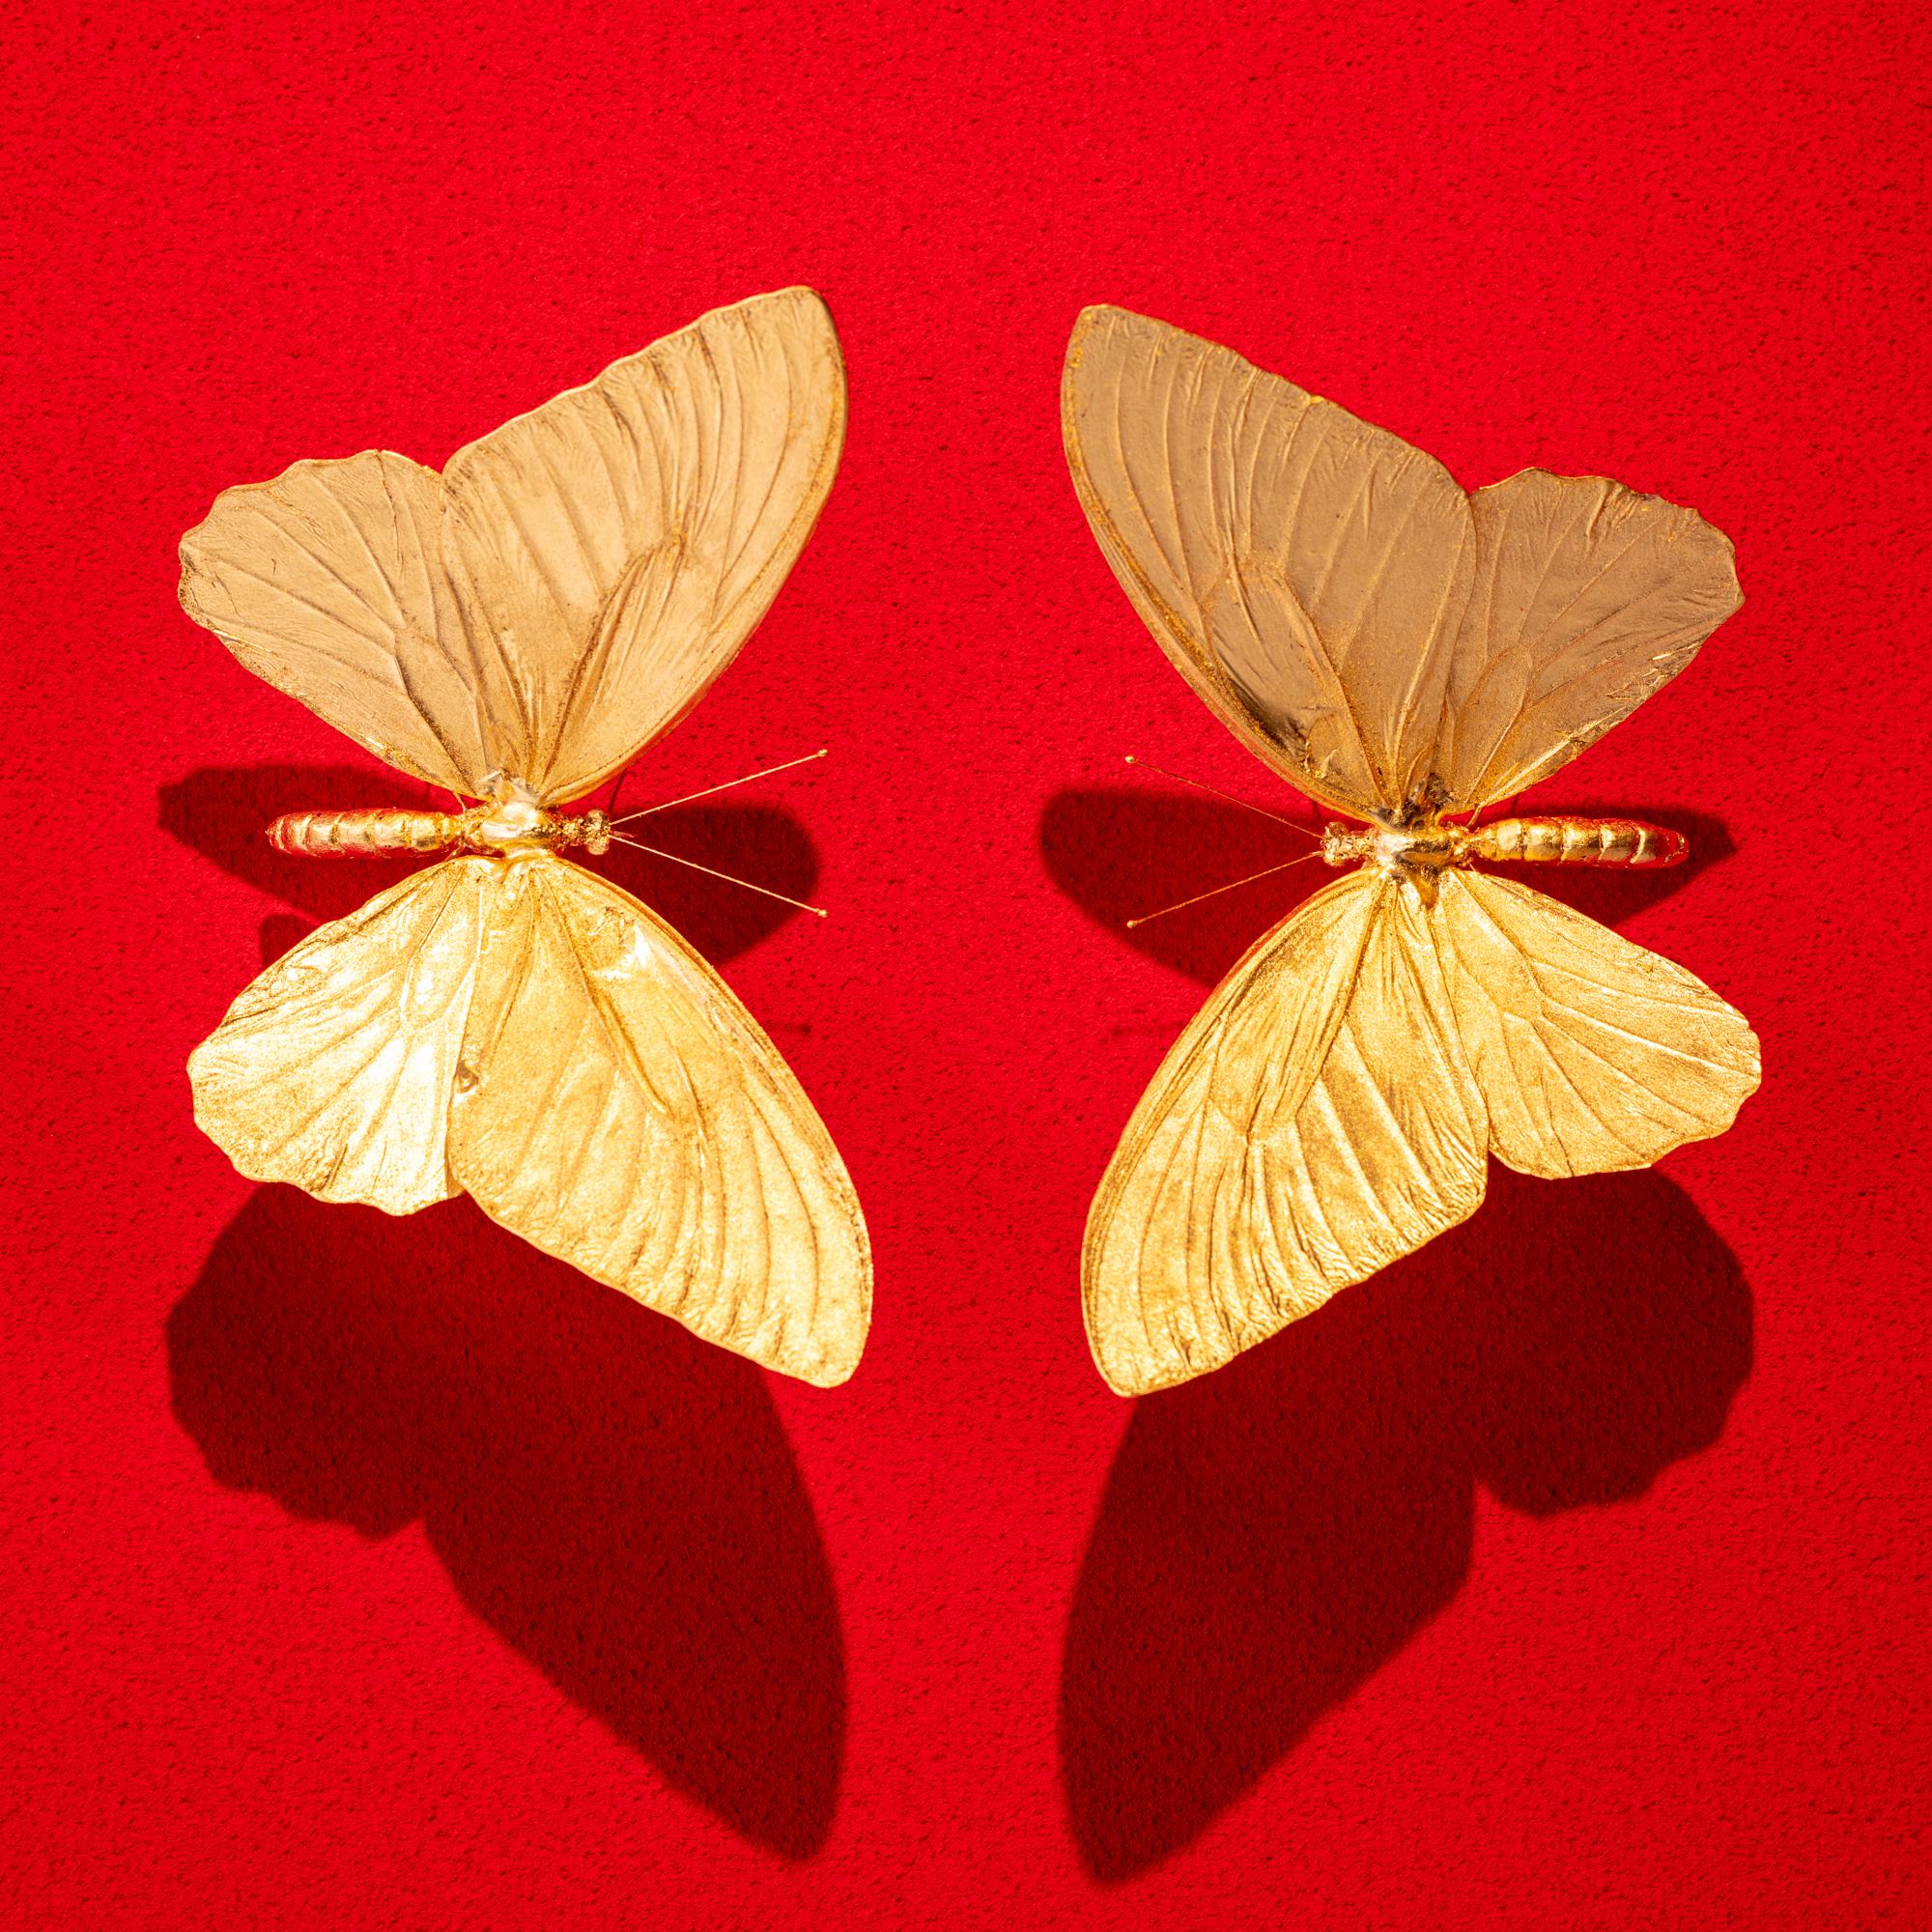 Metamorphosis Red II - 21st Century, Contemporary Figurative, Golden Butterflies 4